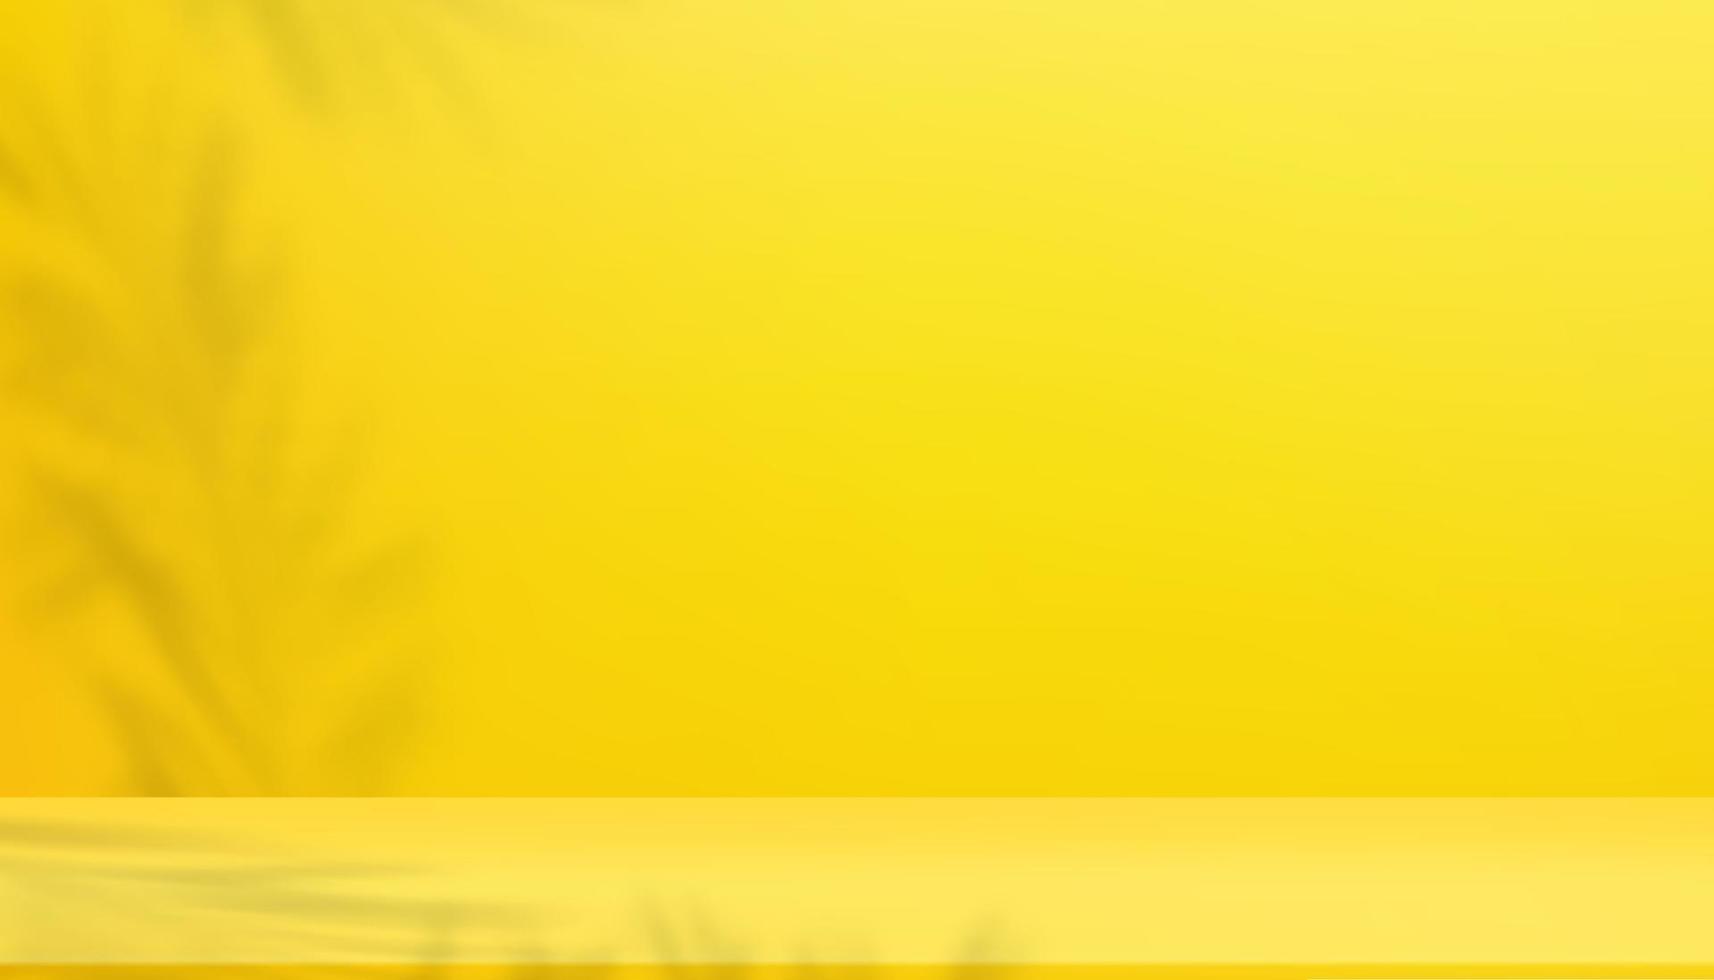 Sfondo sfumato giallo 3d, scena della stanza studio con ombra di foglia di palma sulla parete. illustrazione vettoriale Banner sullo sfondo 3d in design minimale per cosmetici, mockup vetrina per saldi primaverili, estivi o promozione